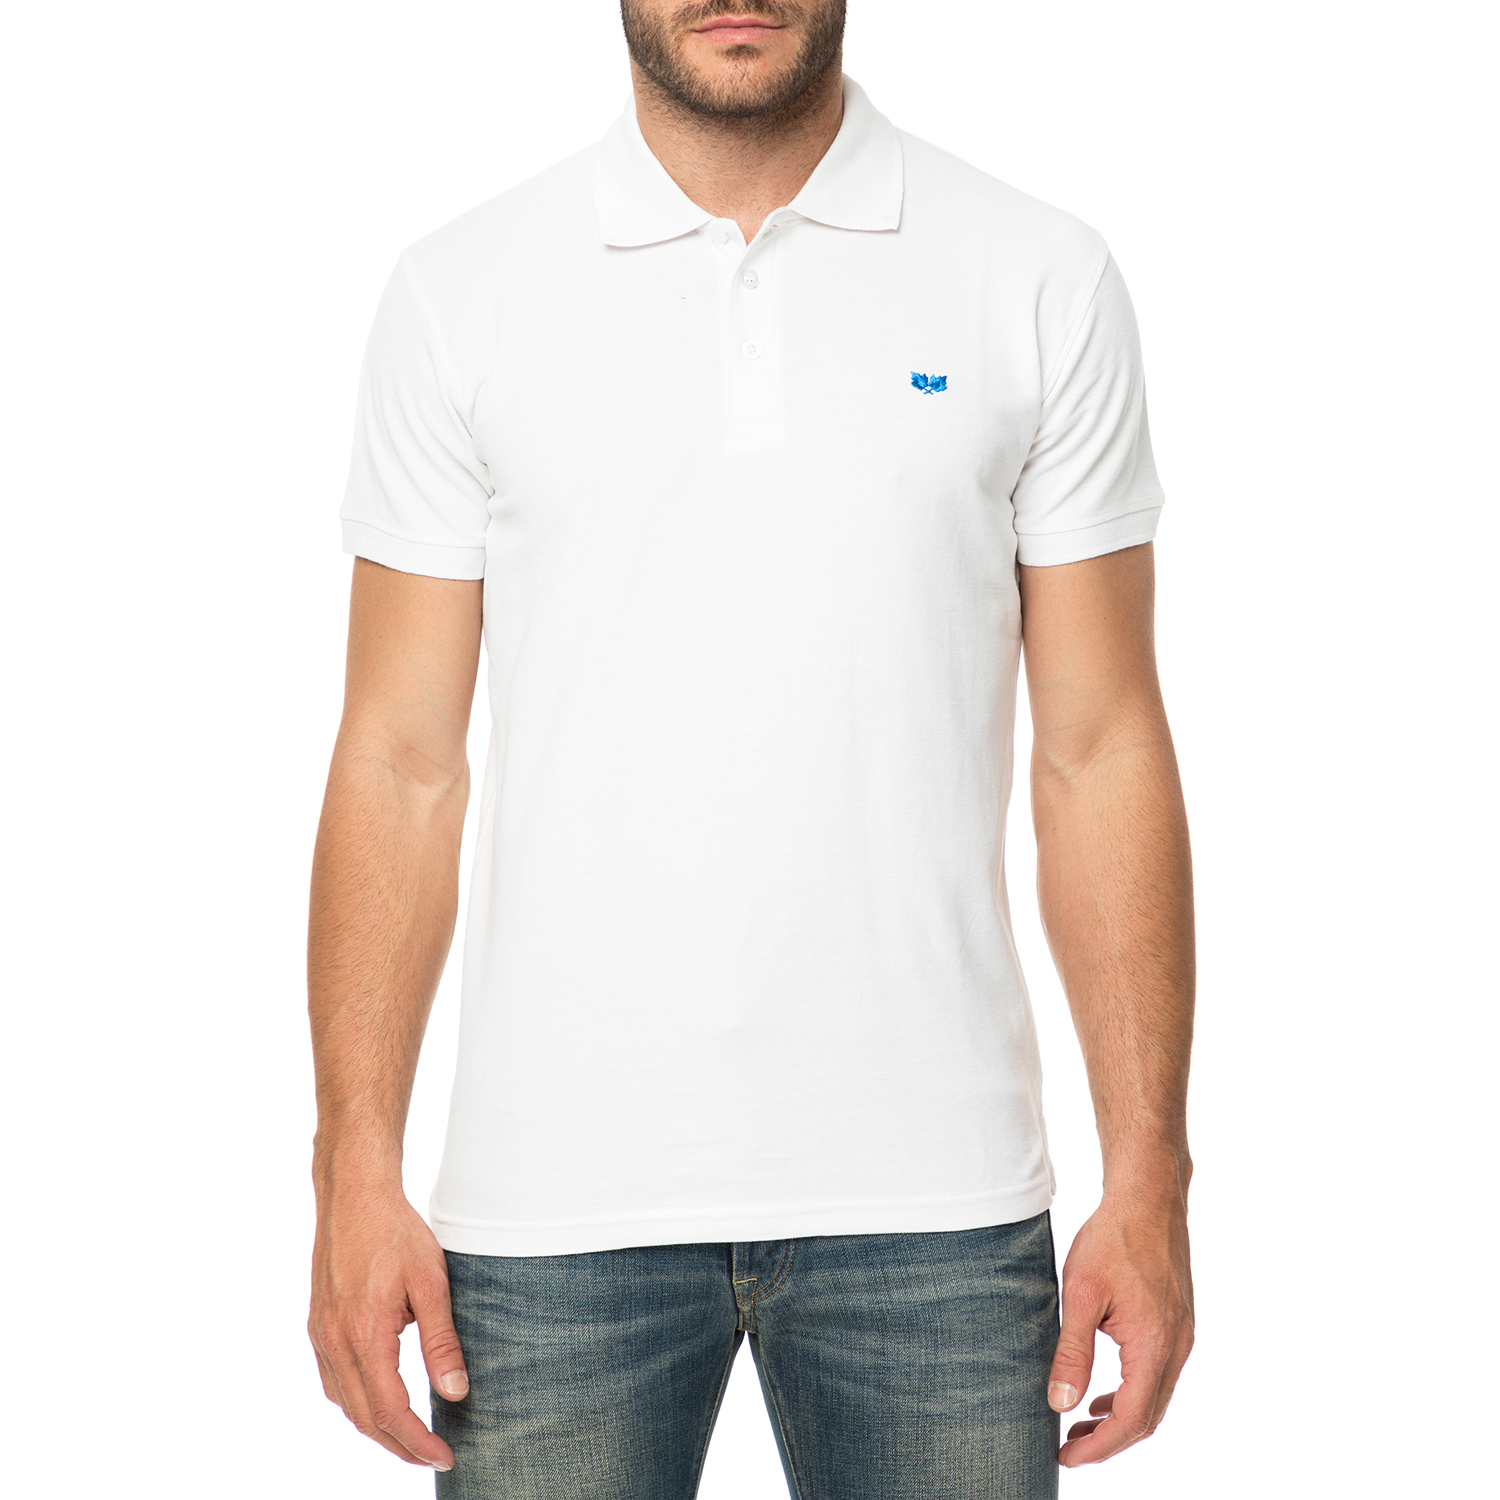 Ανδρικά/Ρούχα/Μπλούζες/Πόλο GREENWOOD - Ανδρική πόλο μπλούζα GREENWOOD λευκή